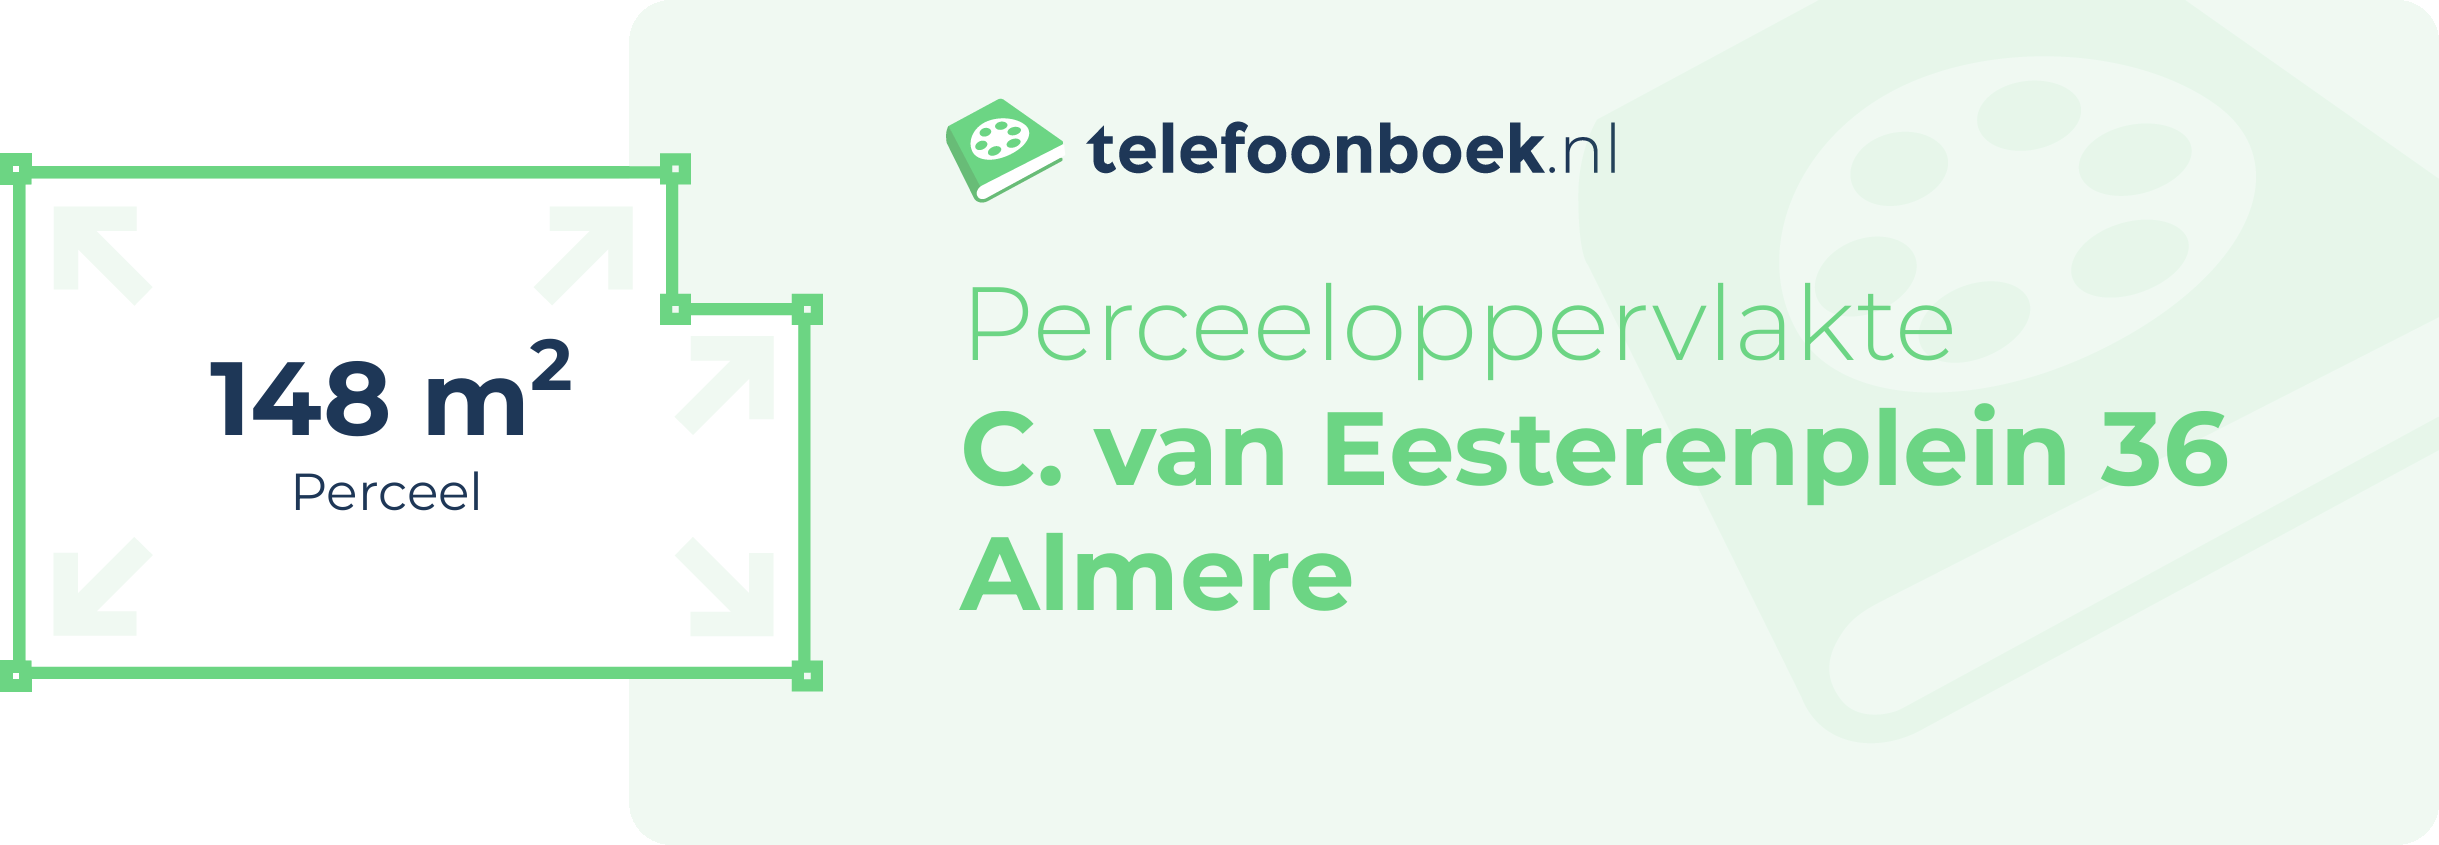 Perceeloppervlakte C. Van Eesterenplein 36 Almere